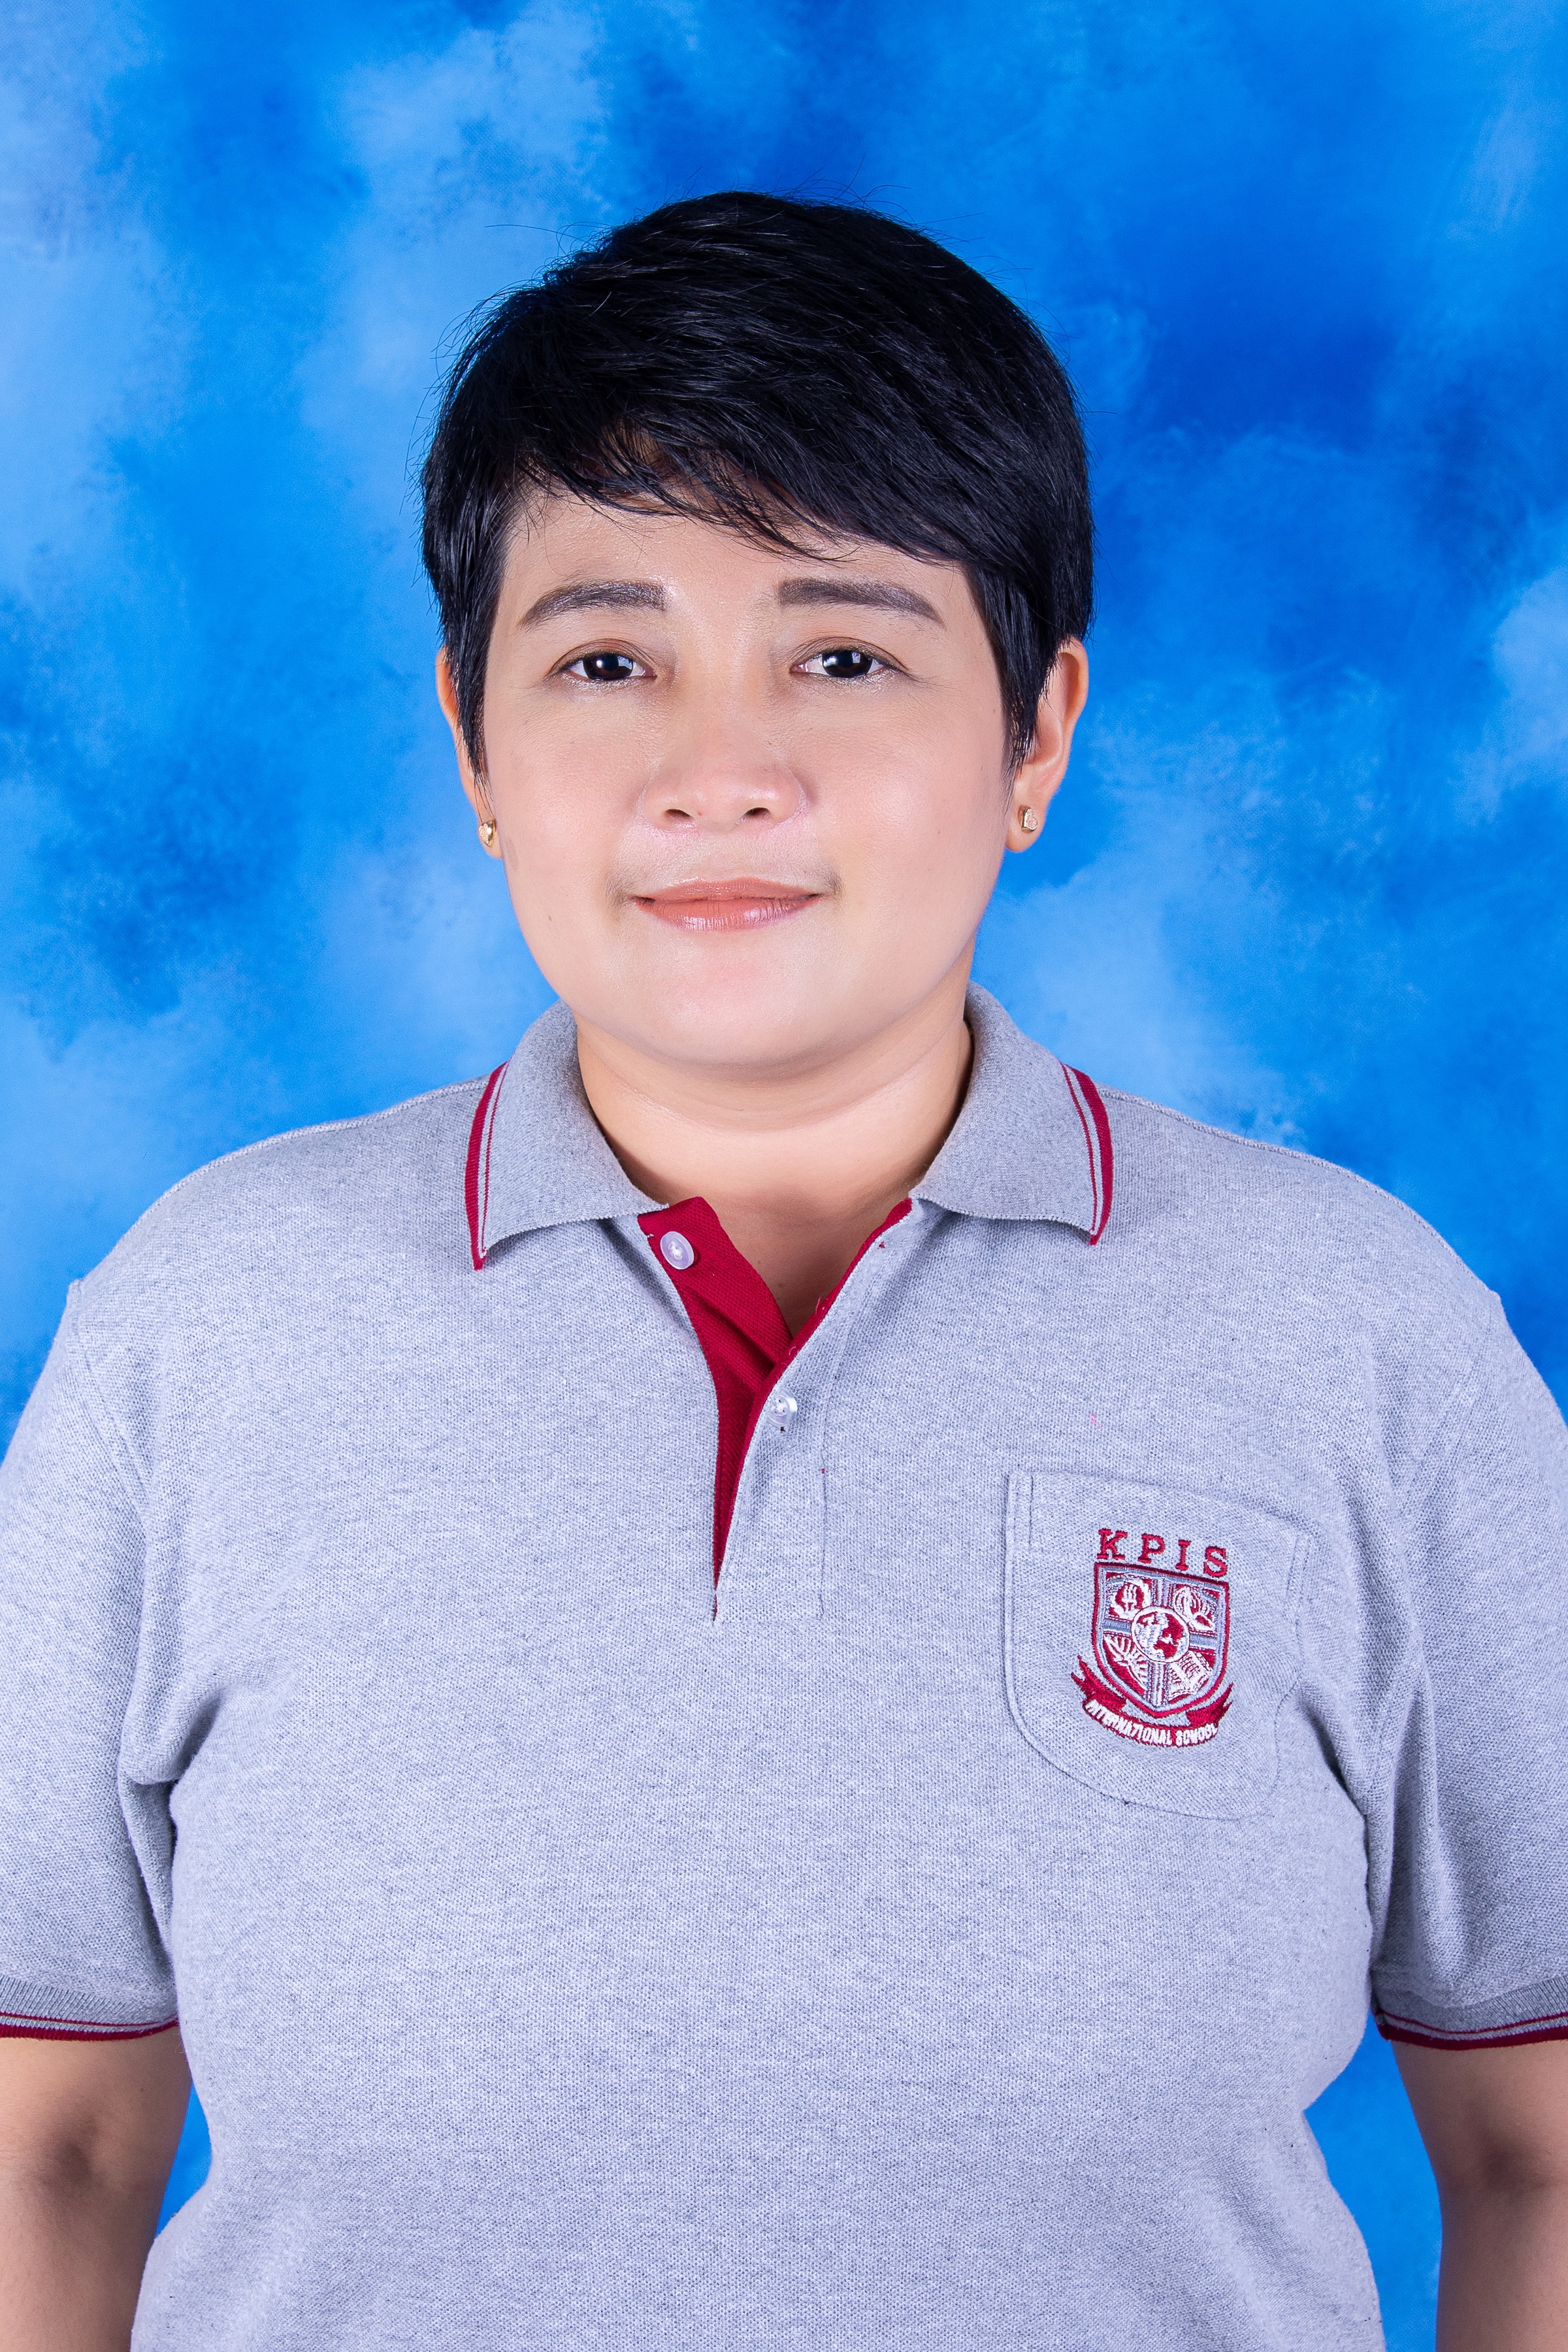 Ms. Prapimpan Wongwichan